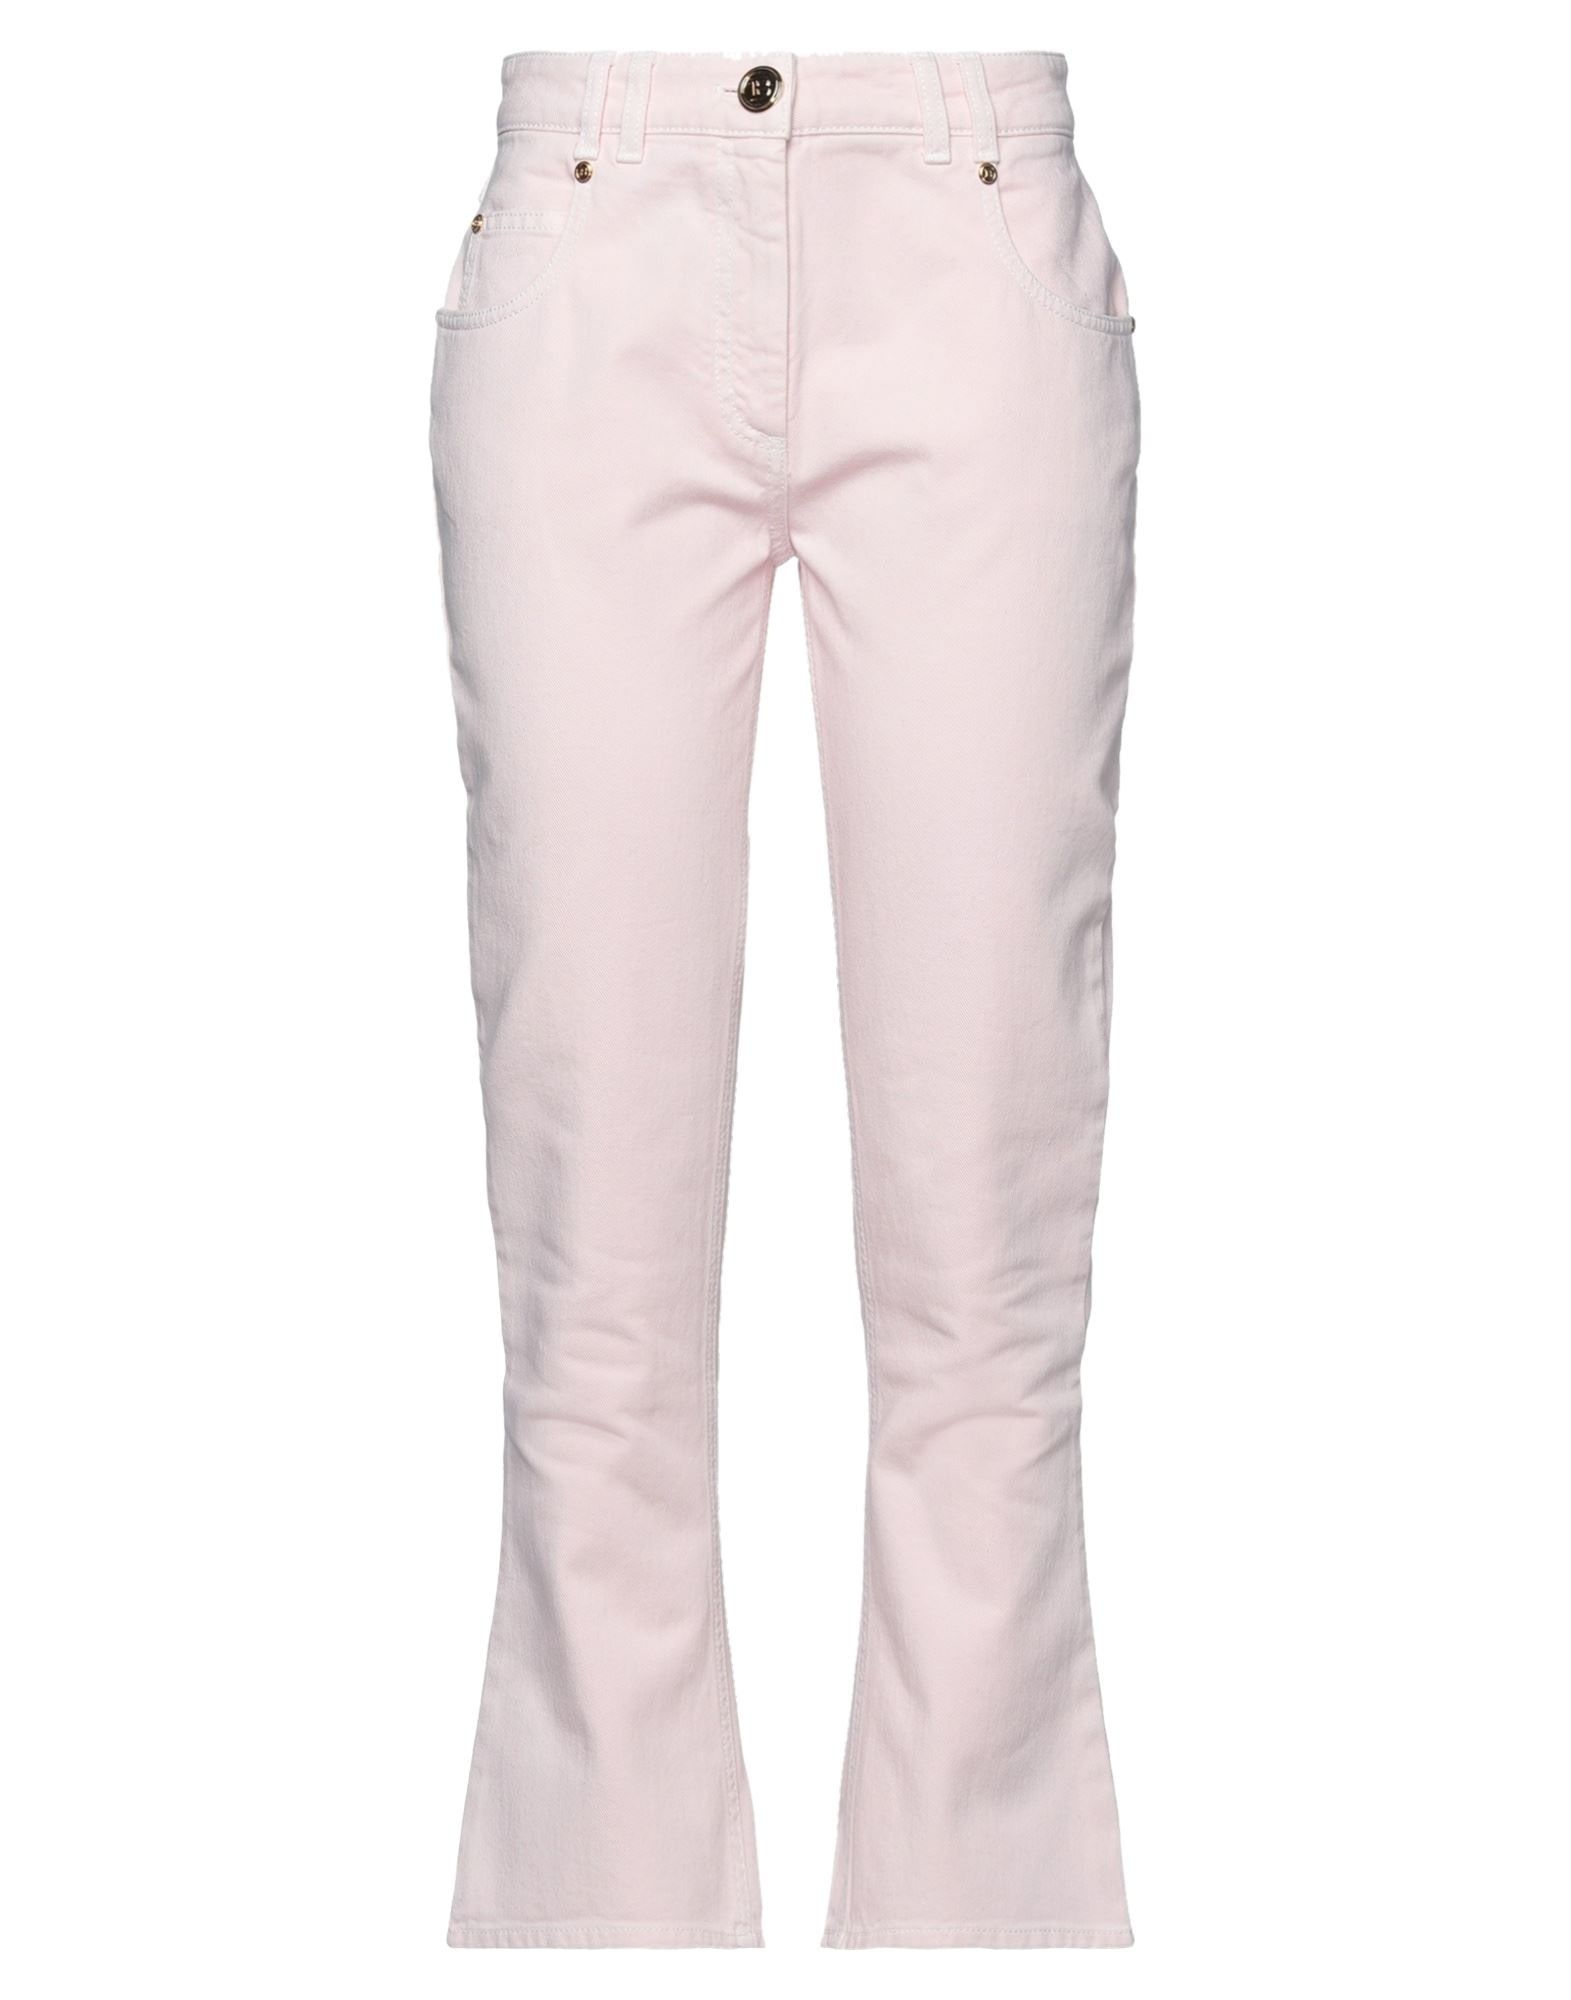 Light pink Women's Bootcut Jeans - 1